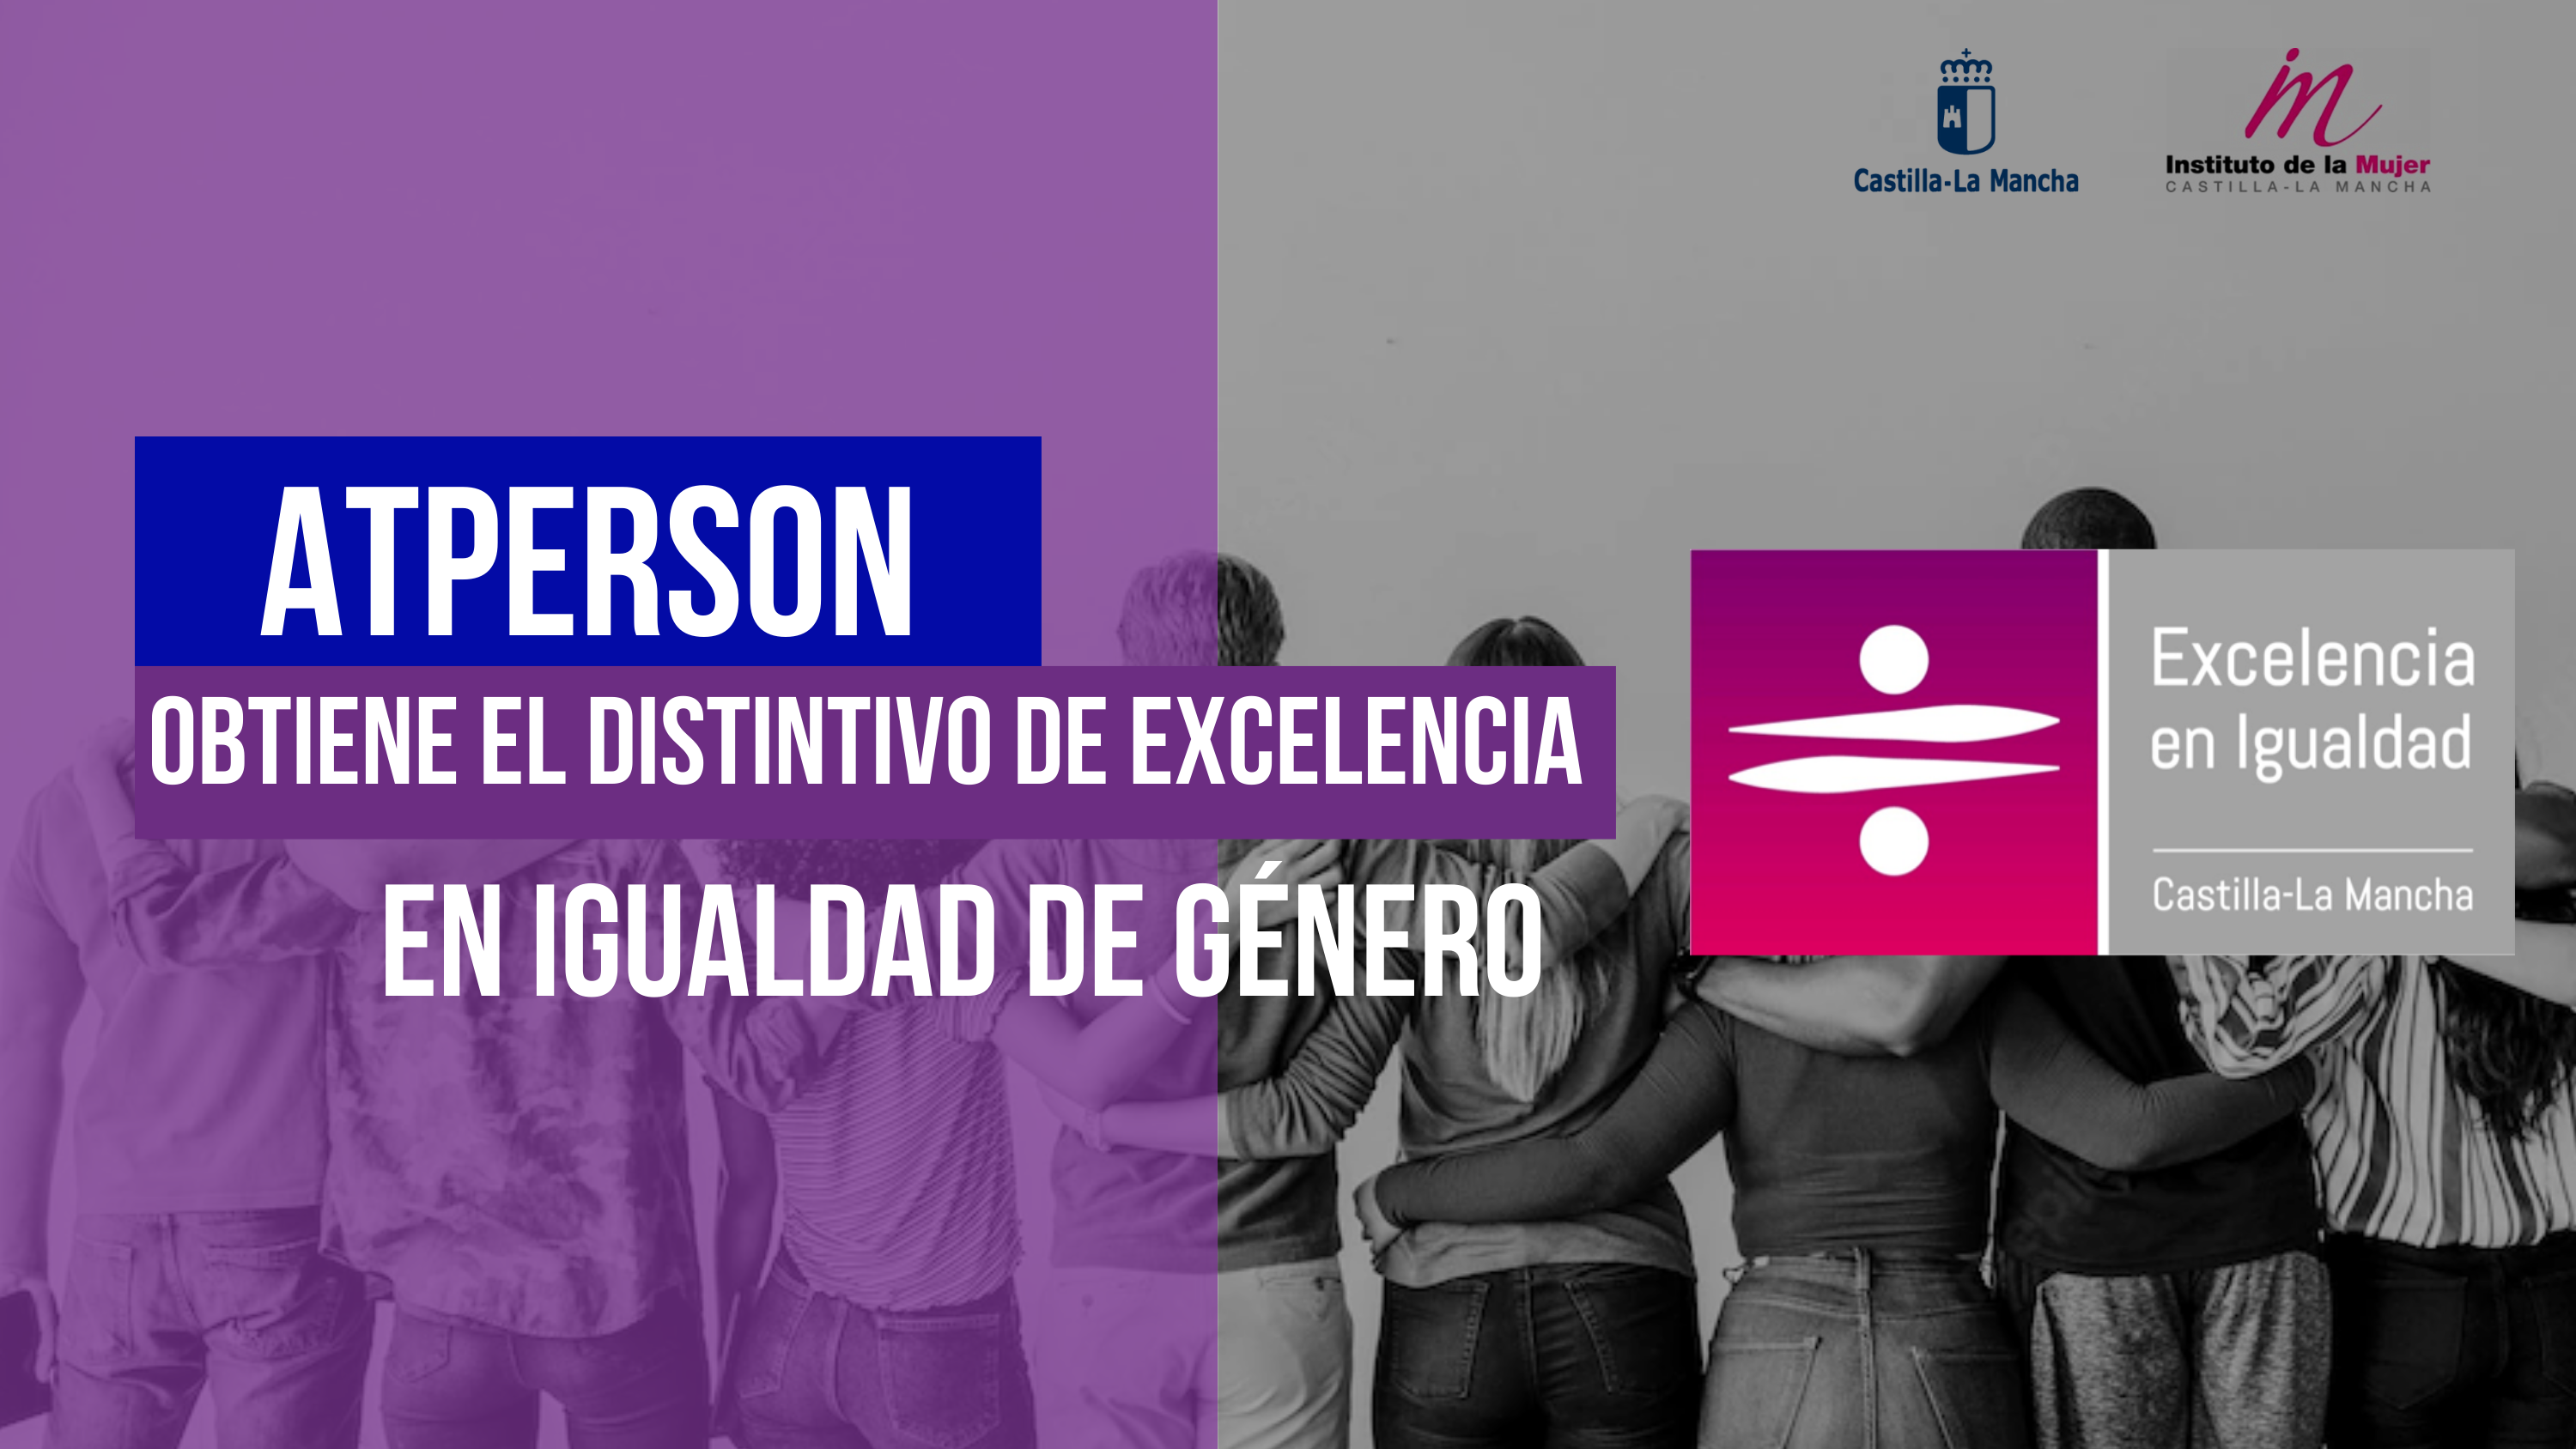 ATPERSON obtiene el “Distintivo en Excelencia en Igualdad de Género” por el Instituto de la Mujer